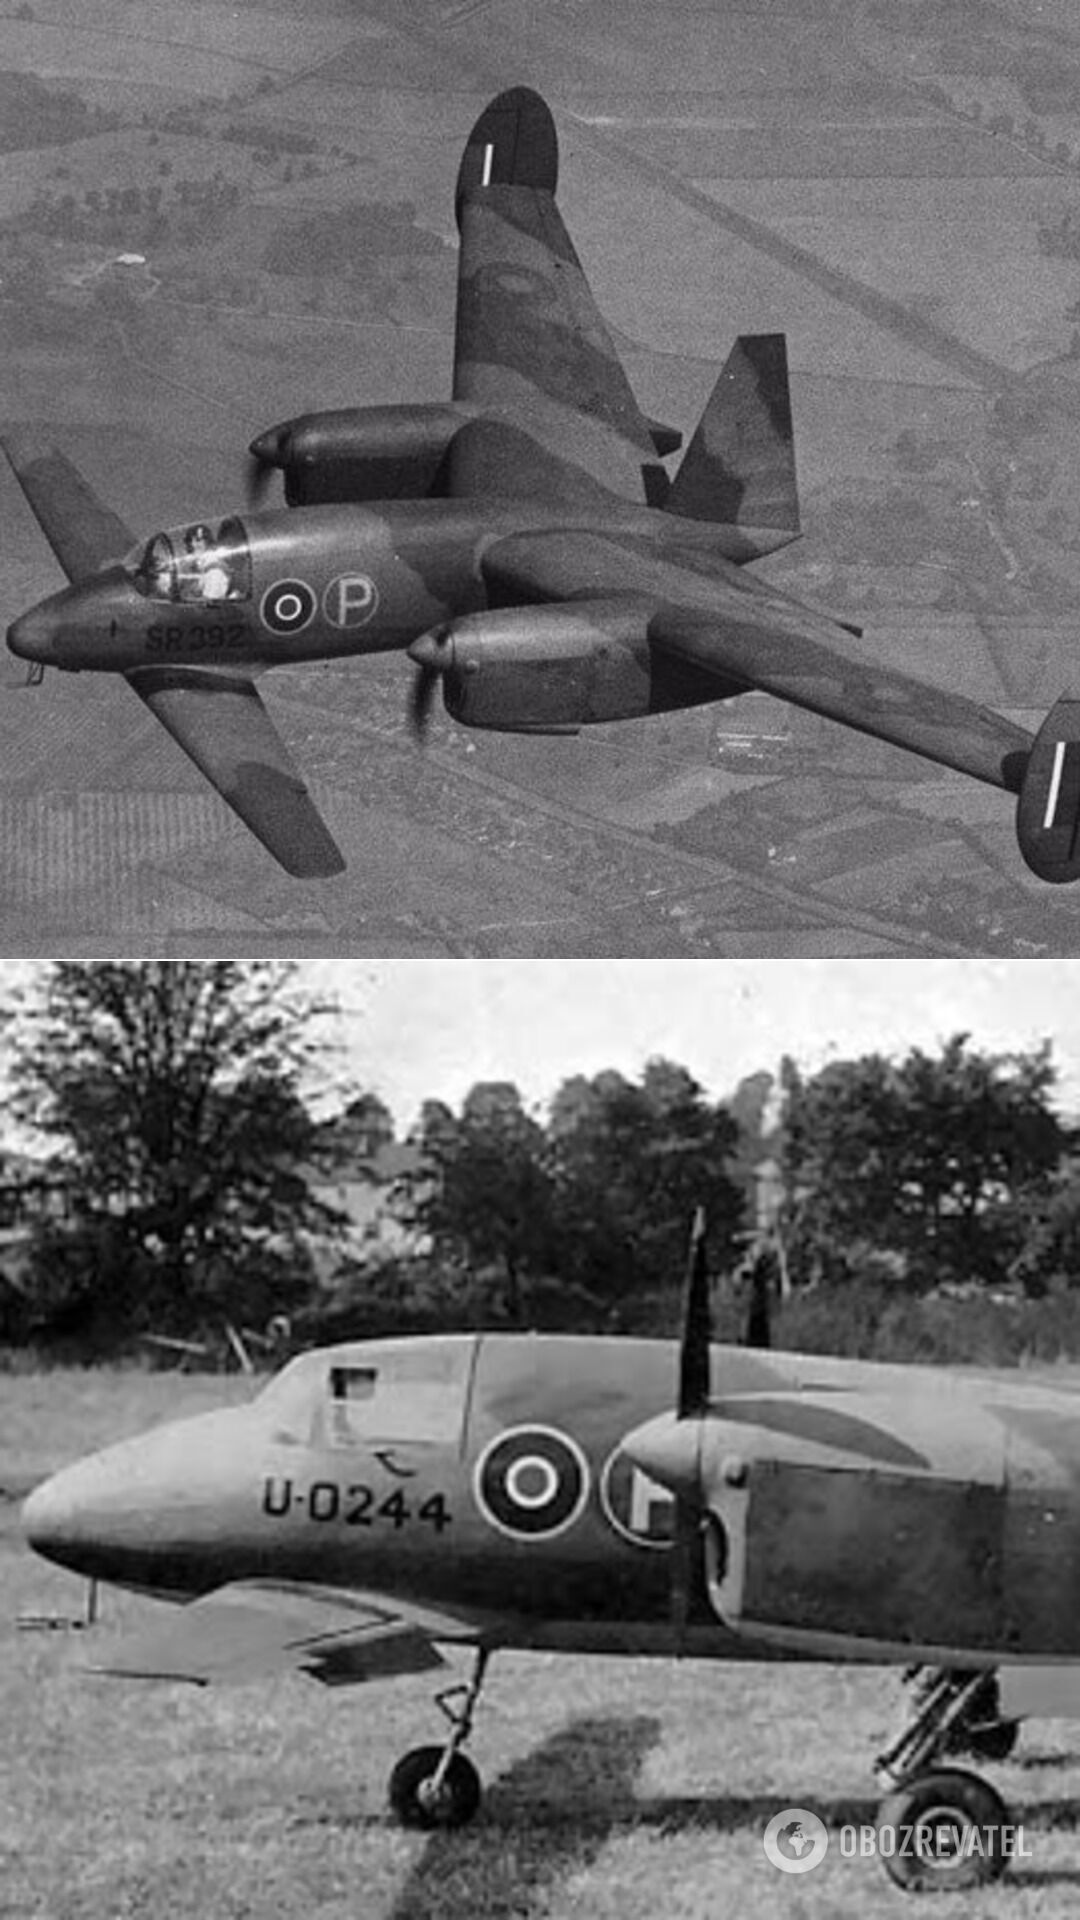 Прототип палубного бомбардировщика M.39B Libellula, названный в честь рода стрекоз. По замыслу британских инженеров, конструкция могла позволить уменьшить размах крыльев, увеличив их число. Но прототип должных способностей не продемонстрировал и от этой идеи пришлось отказаться